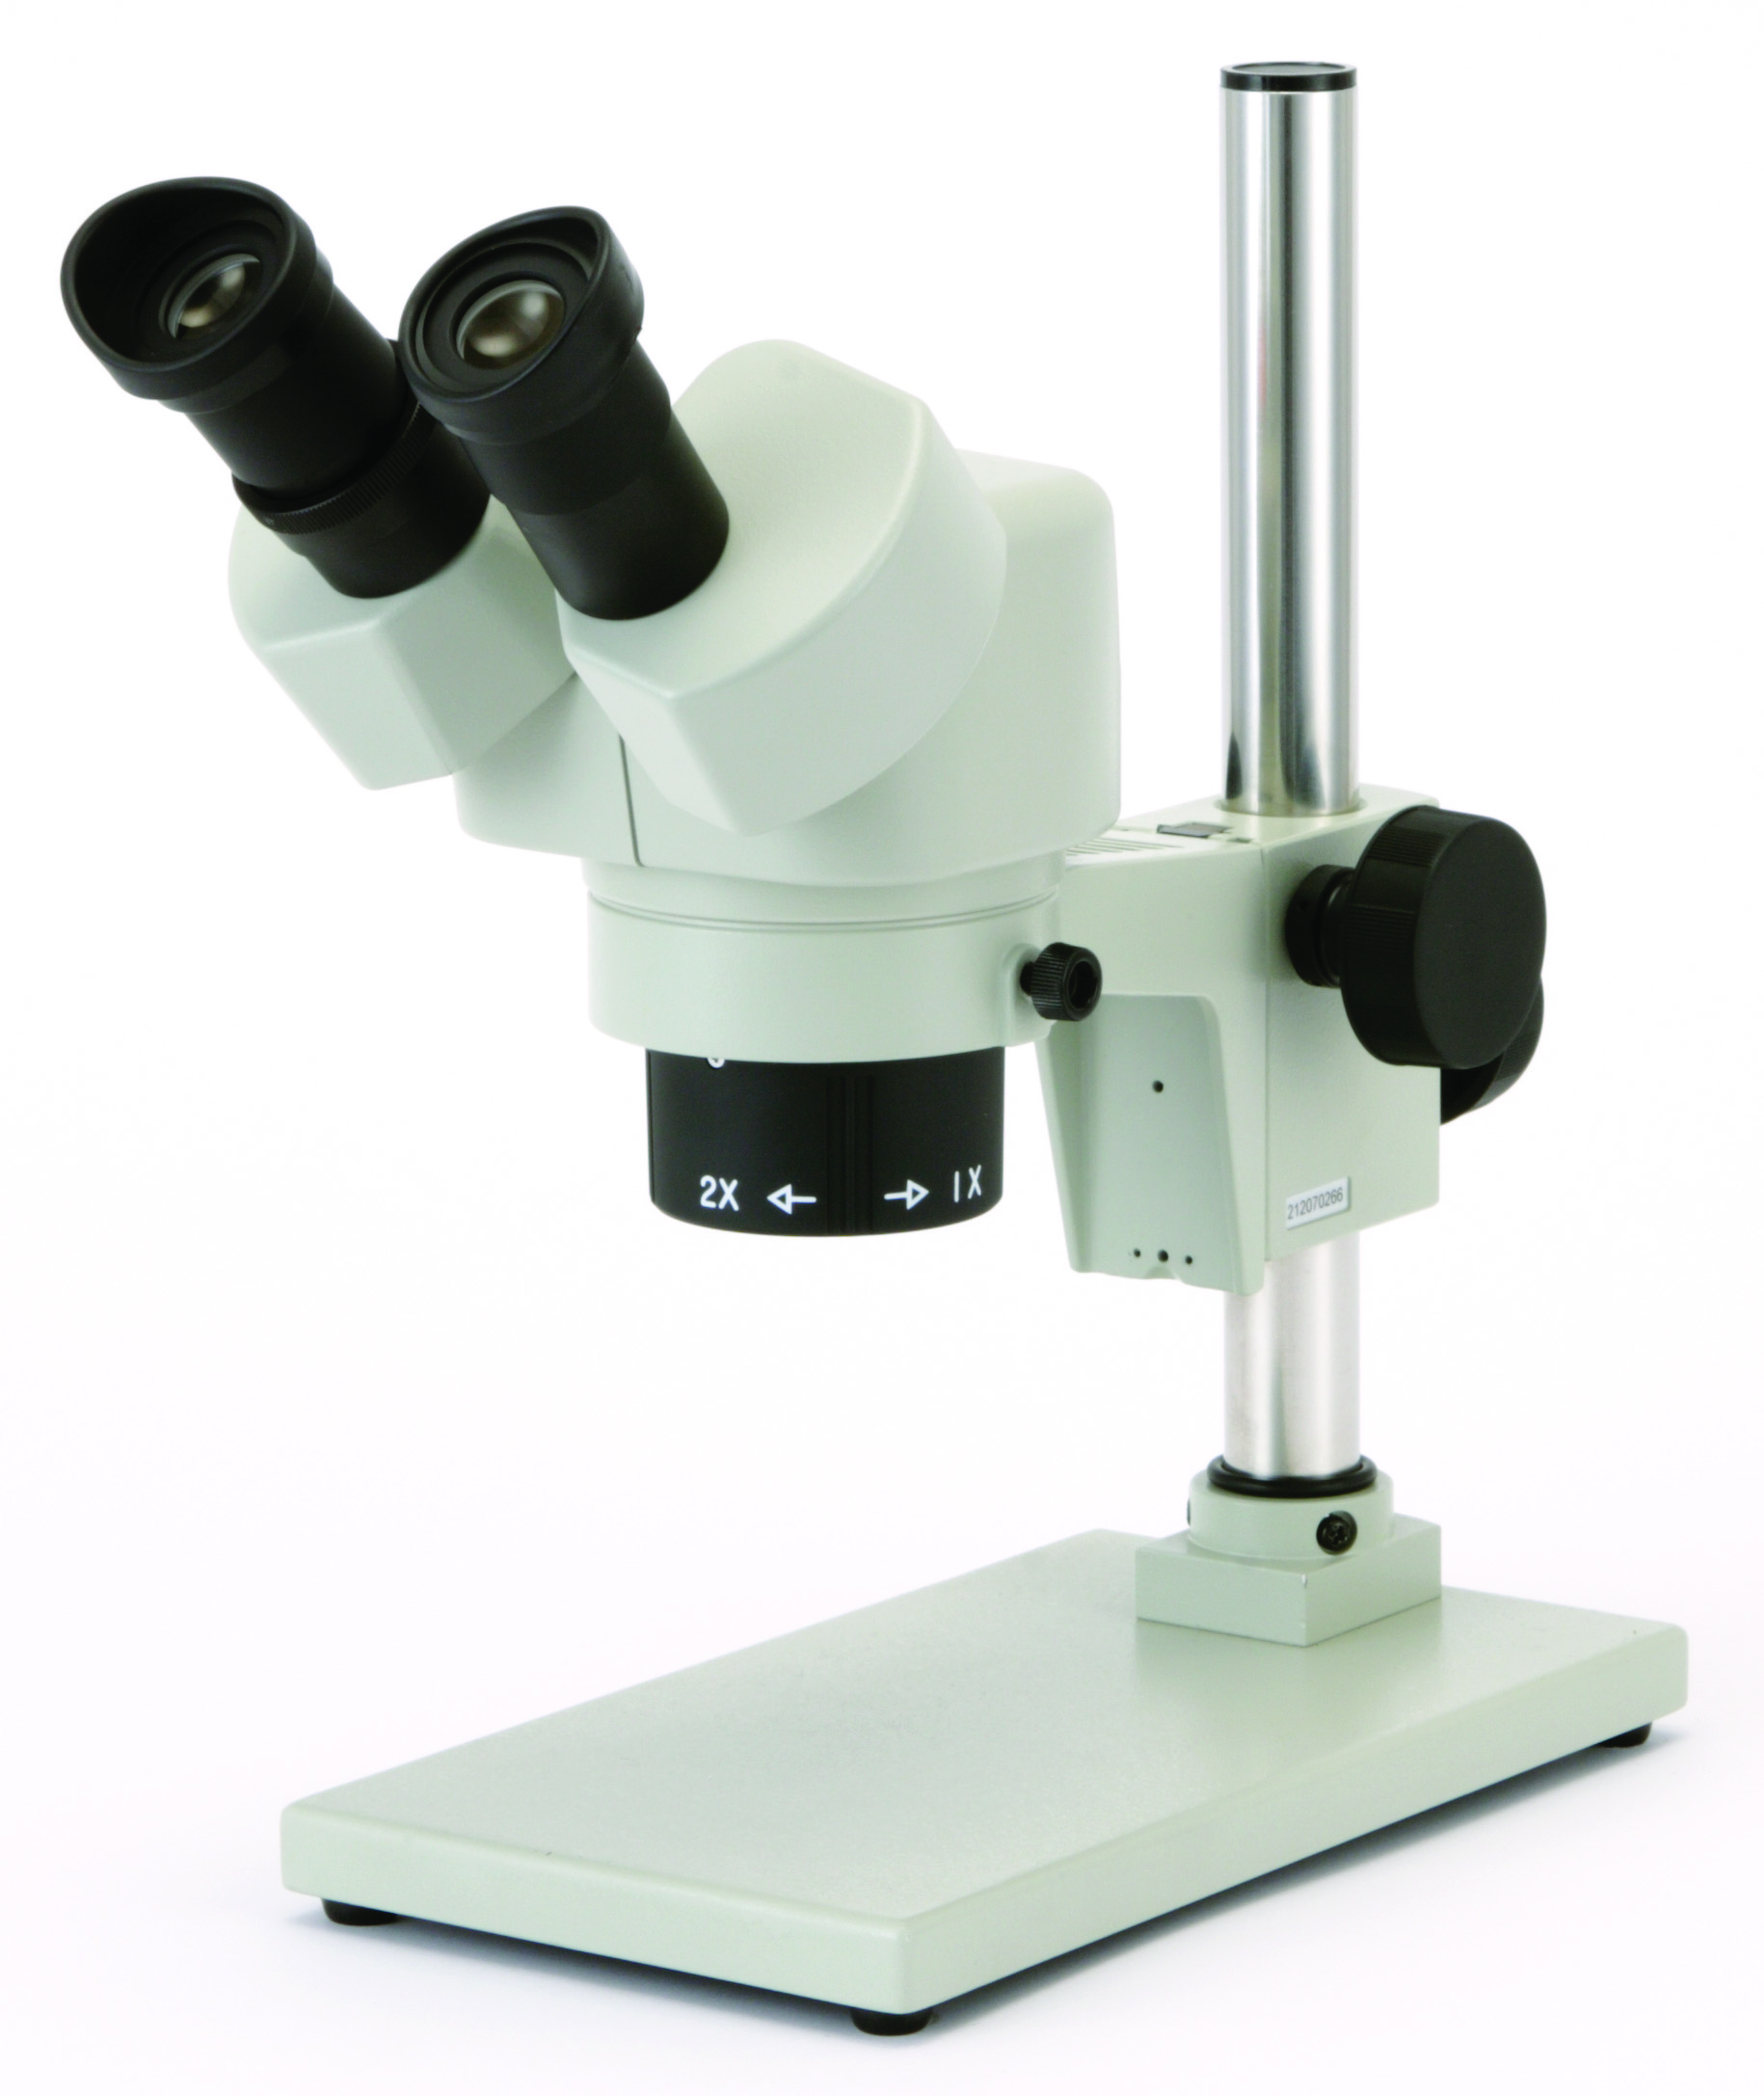 カートン光学 固定システム実体顕微鏡<双眼式>倍率20倍